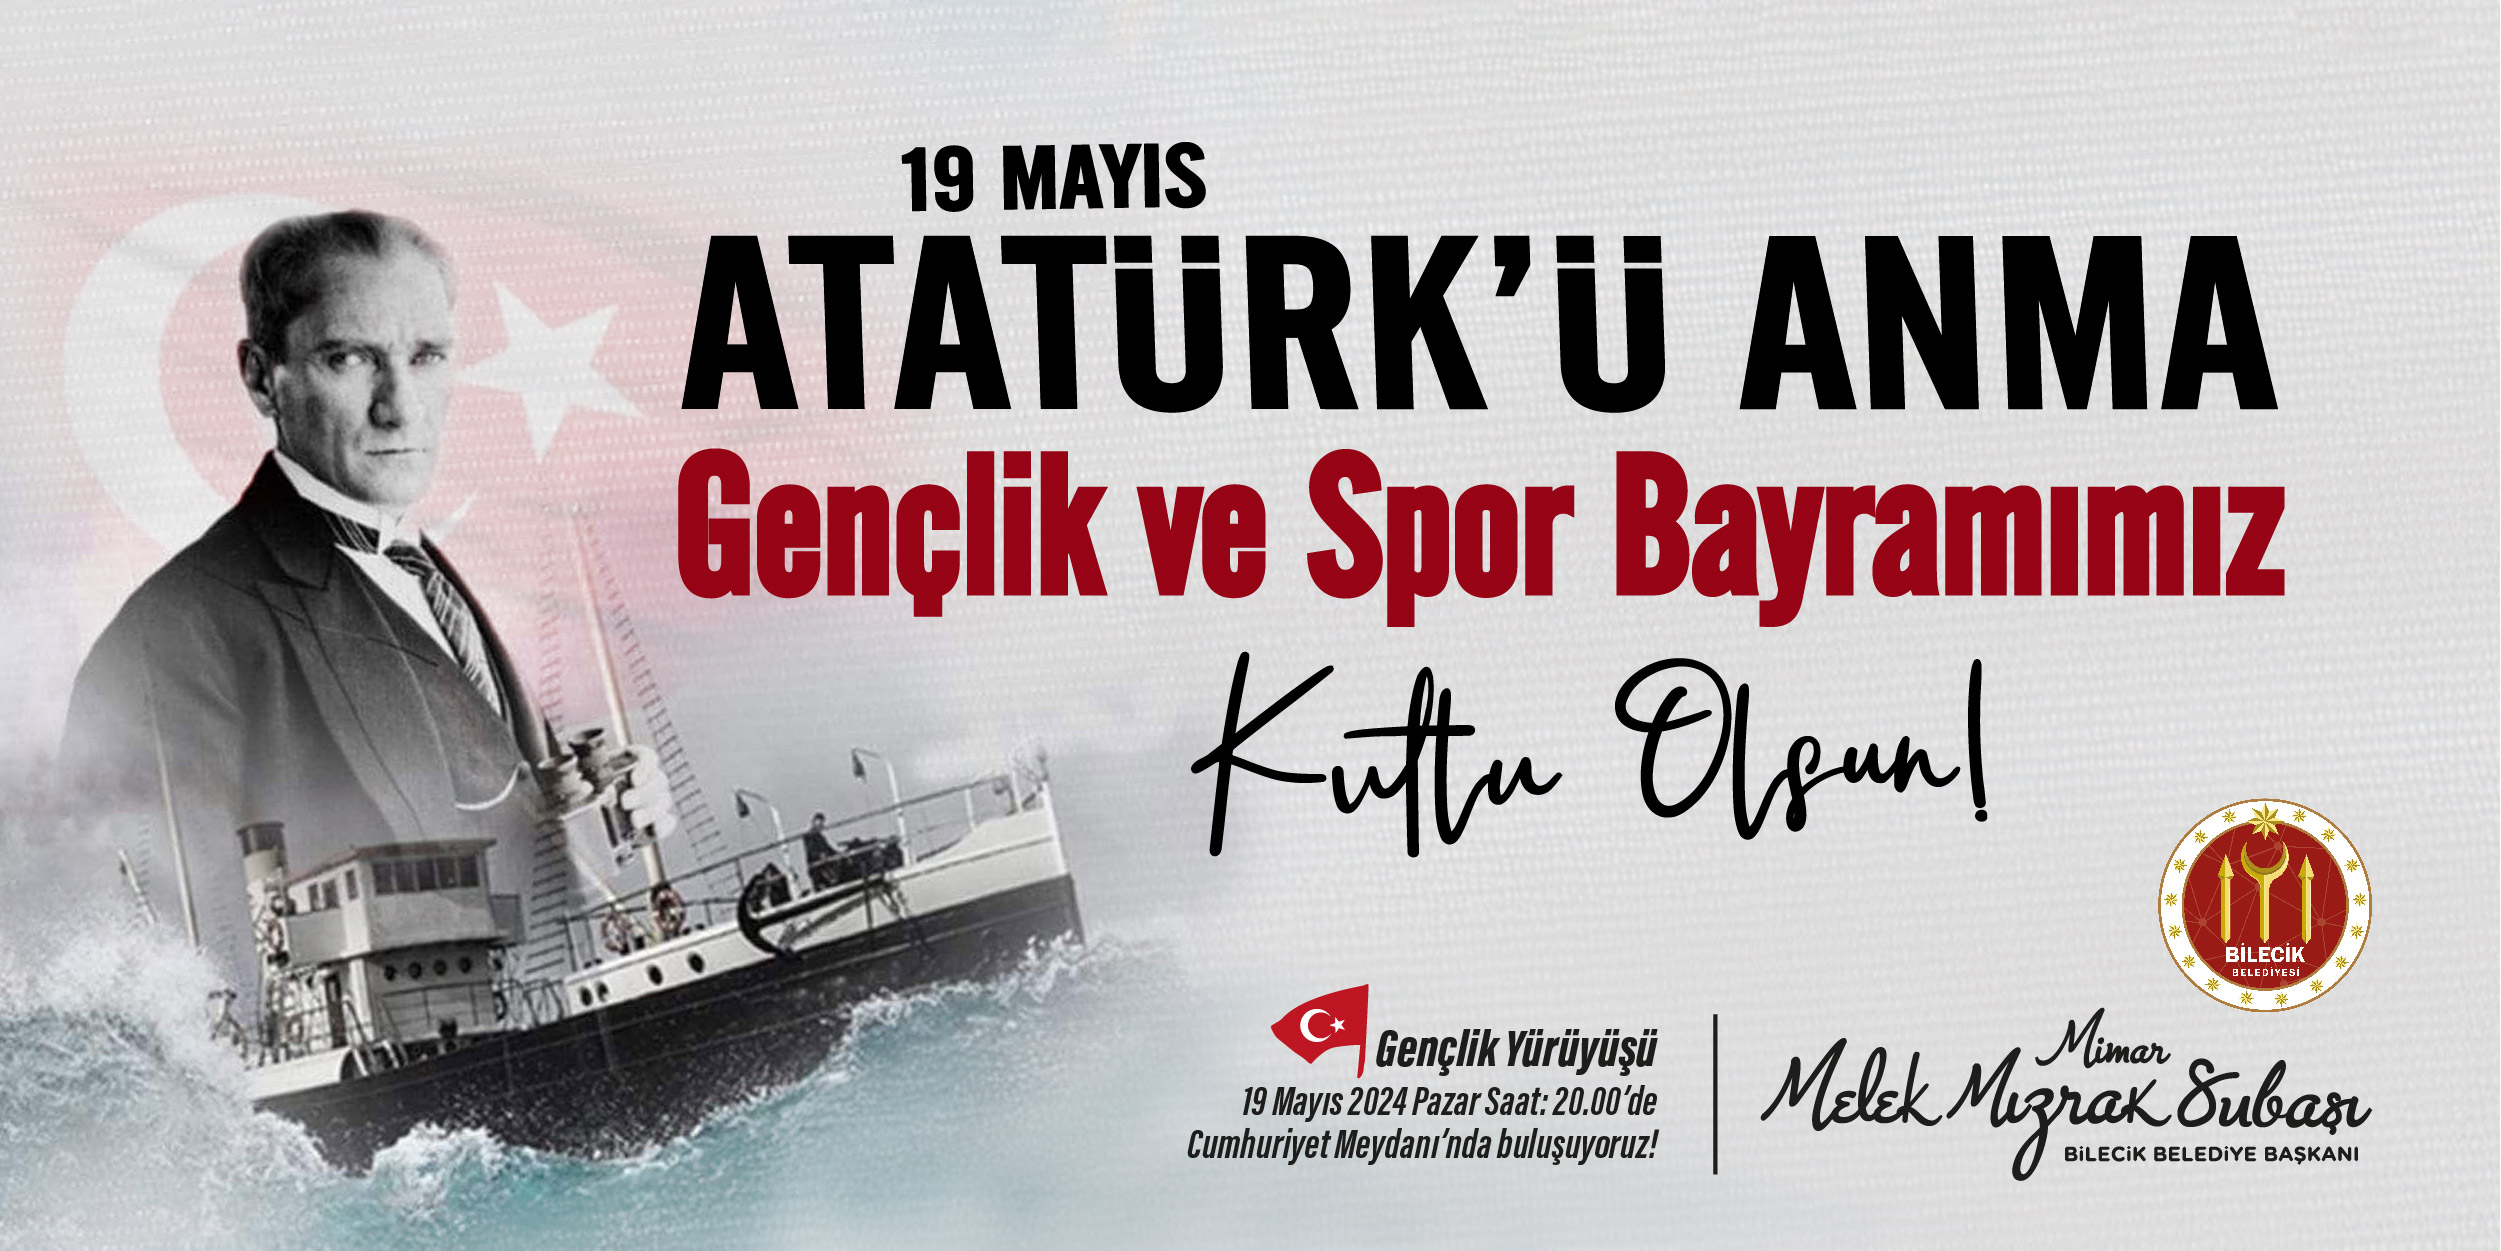 19 Mayıs Atatürk’ü Anma Gençlik ve Spor Bayramı Kutlu Olsun | Bilecik Belediye Başkanı Melek Mızrak Subaşı